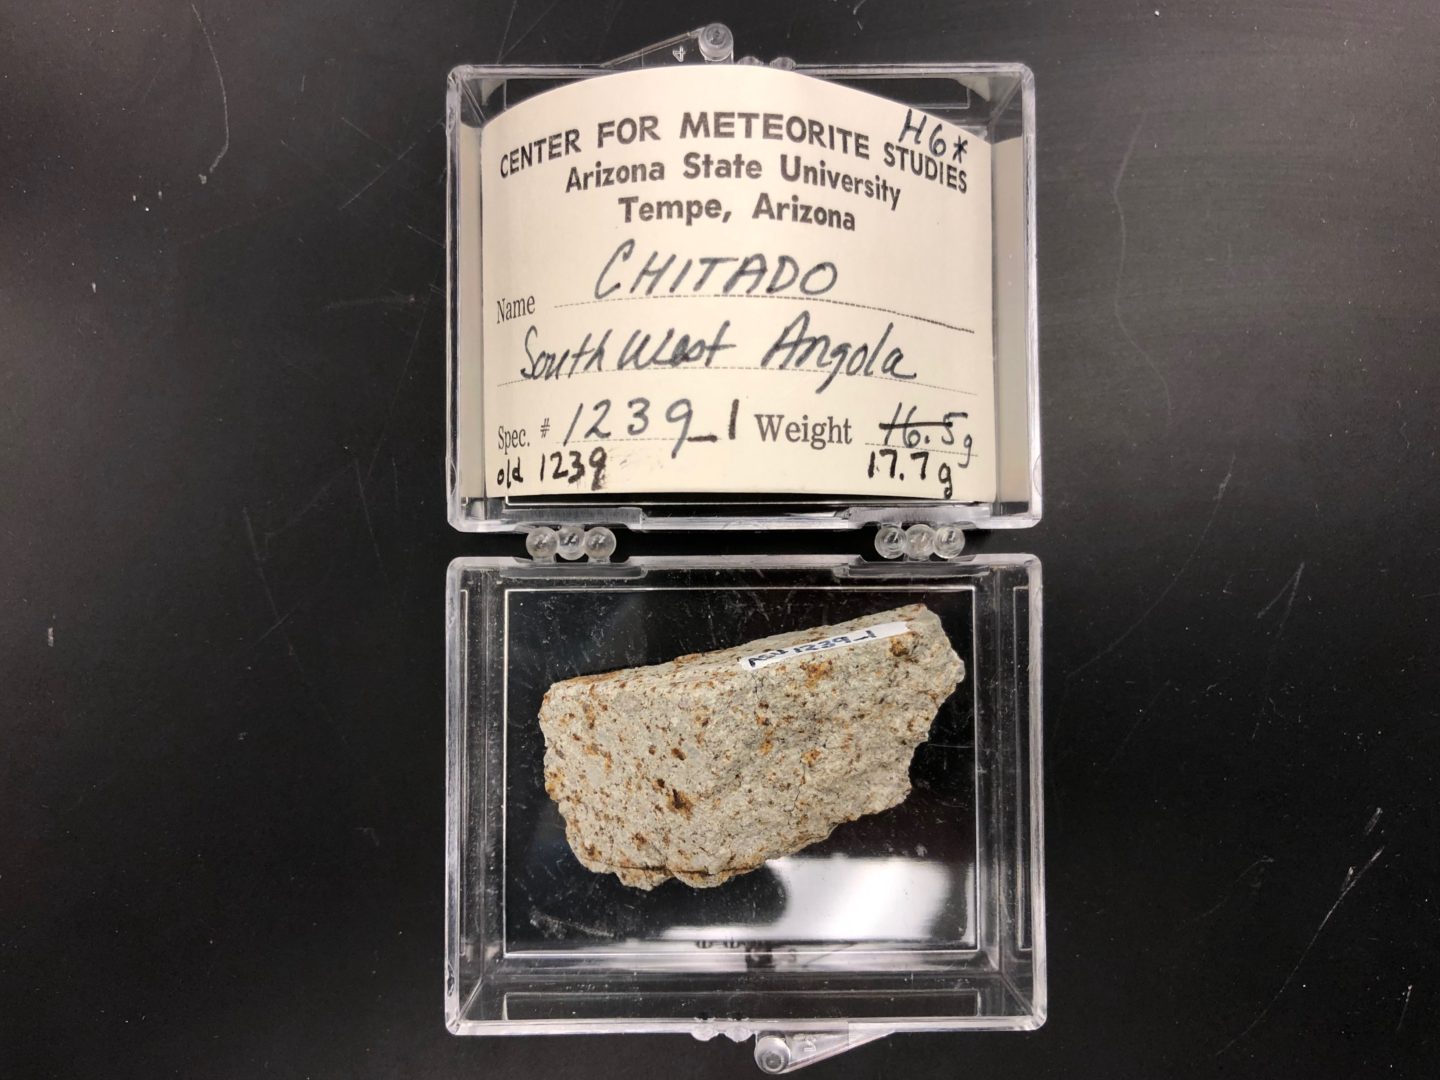 Chitado meteorite